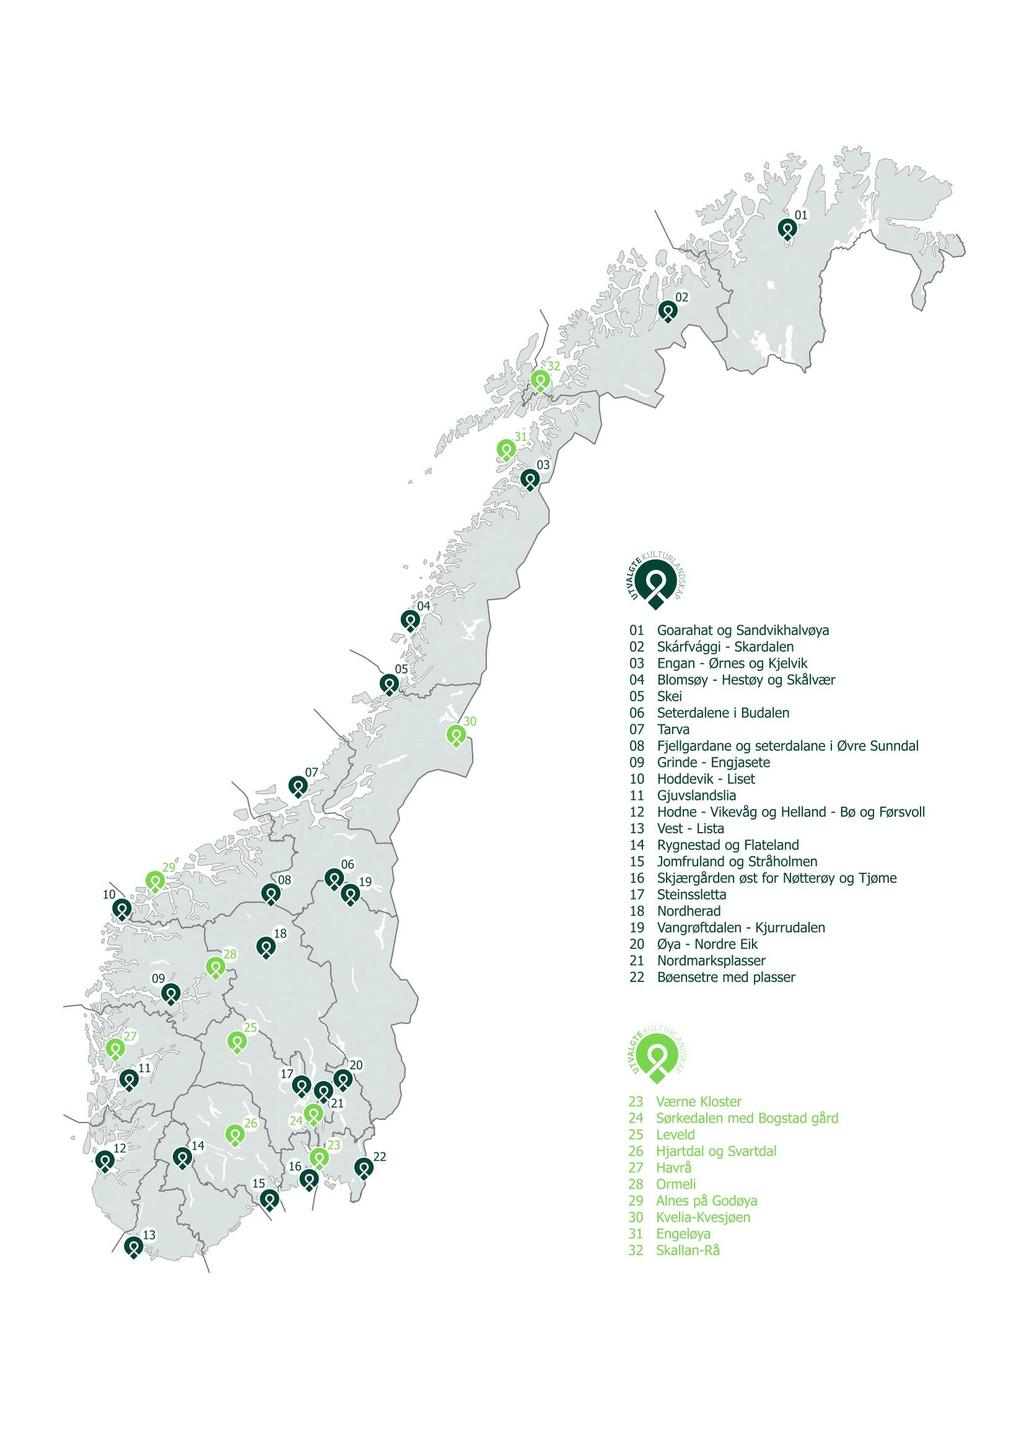 Kart over dagens utvalgte kulturlandskap i jordbruket (mørkegrønne)